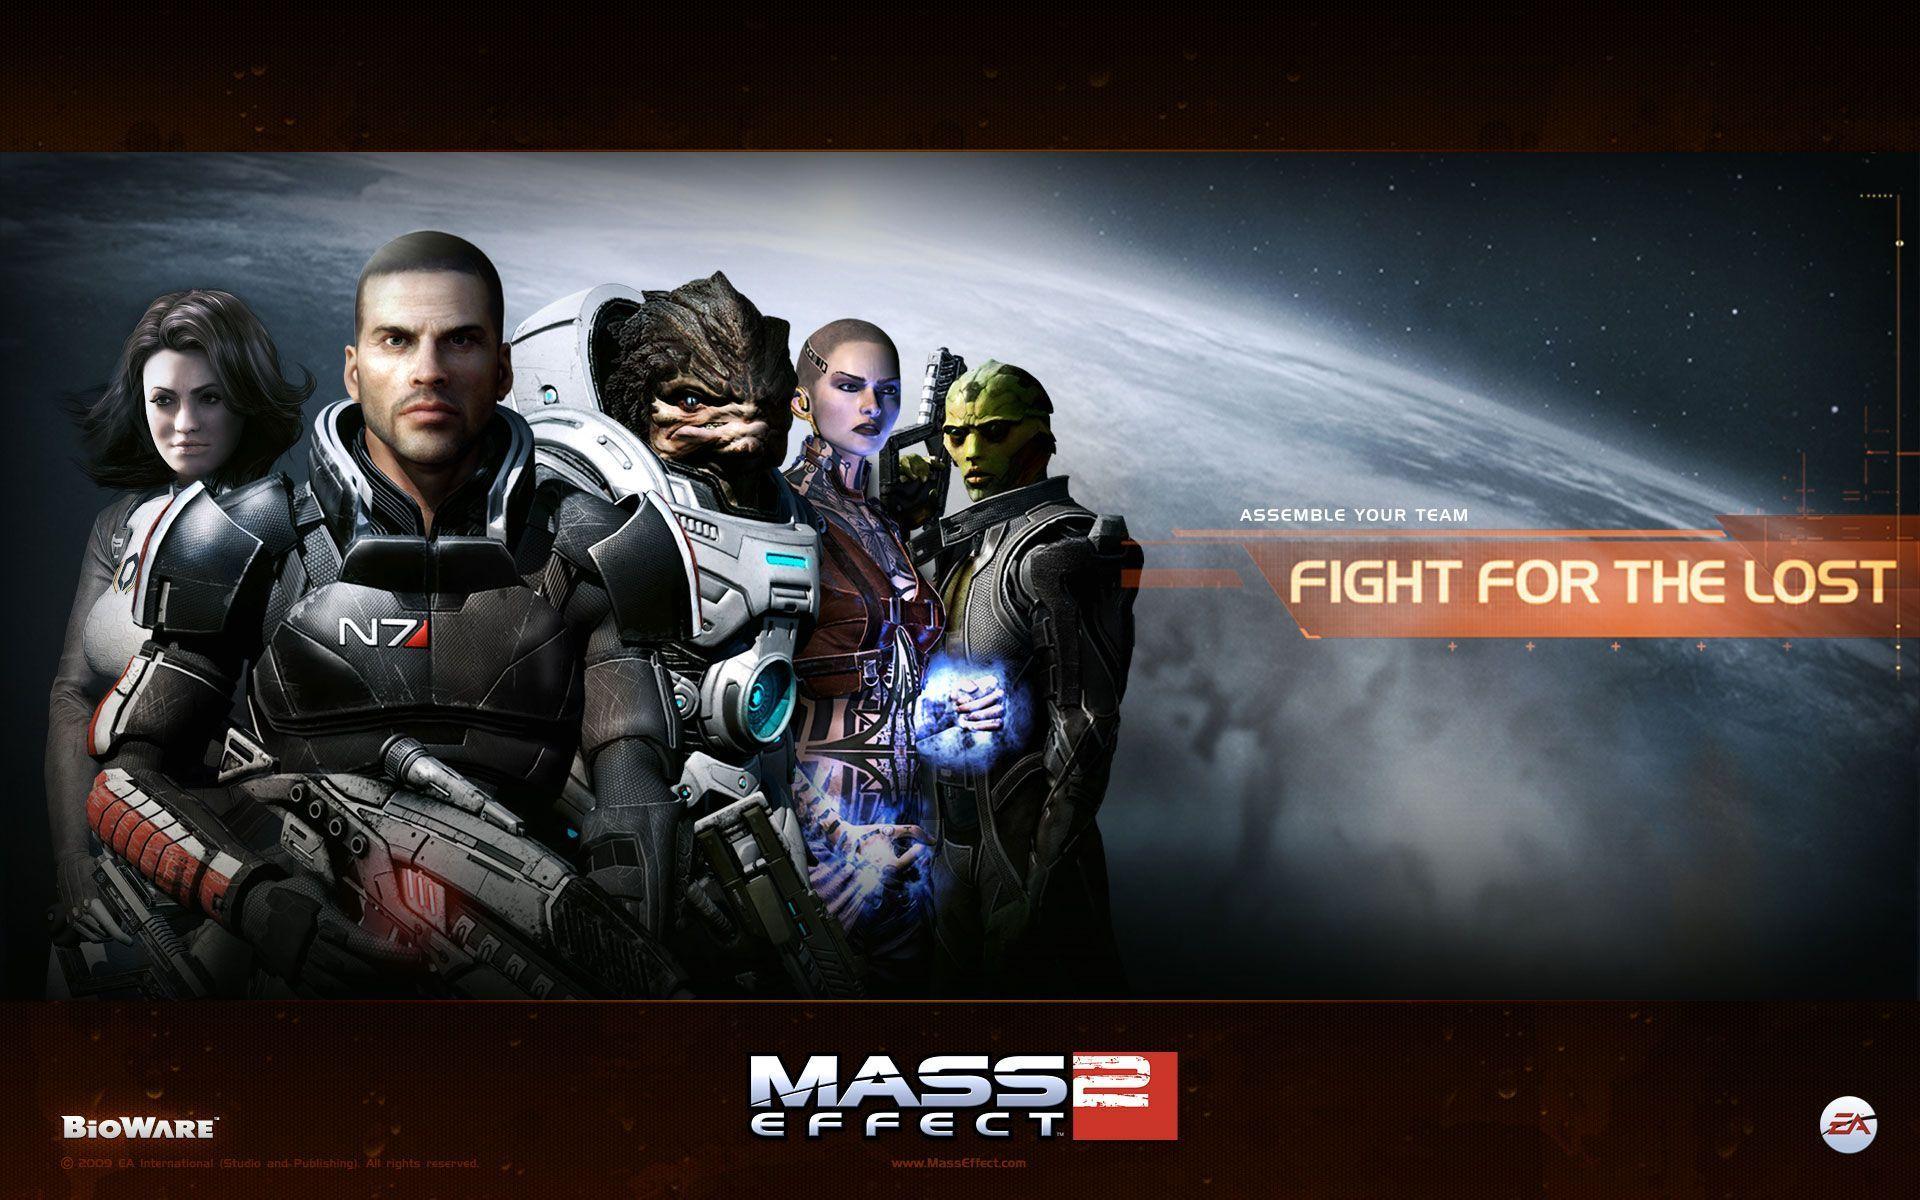 Mass Effect HD Wallpapers - Wallpaper Cave